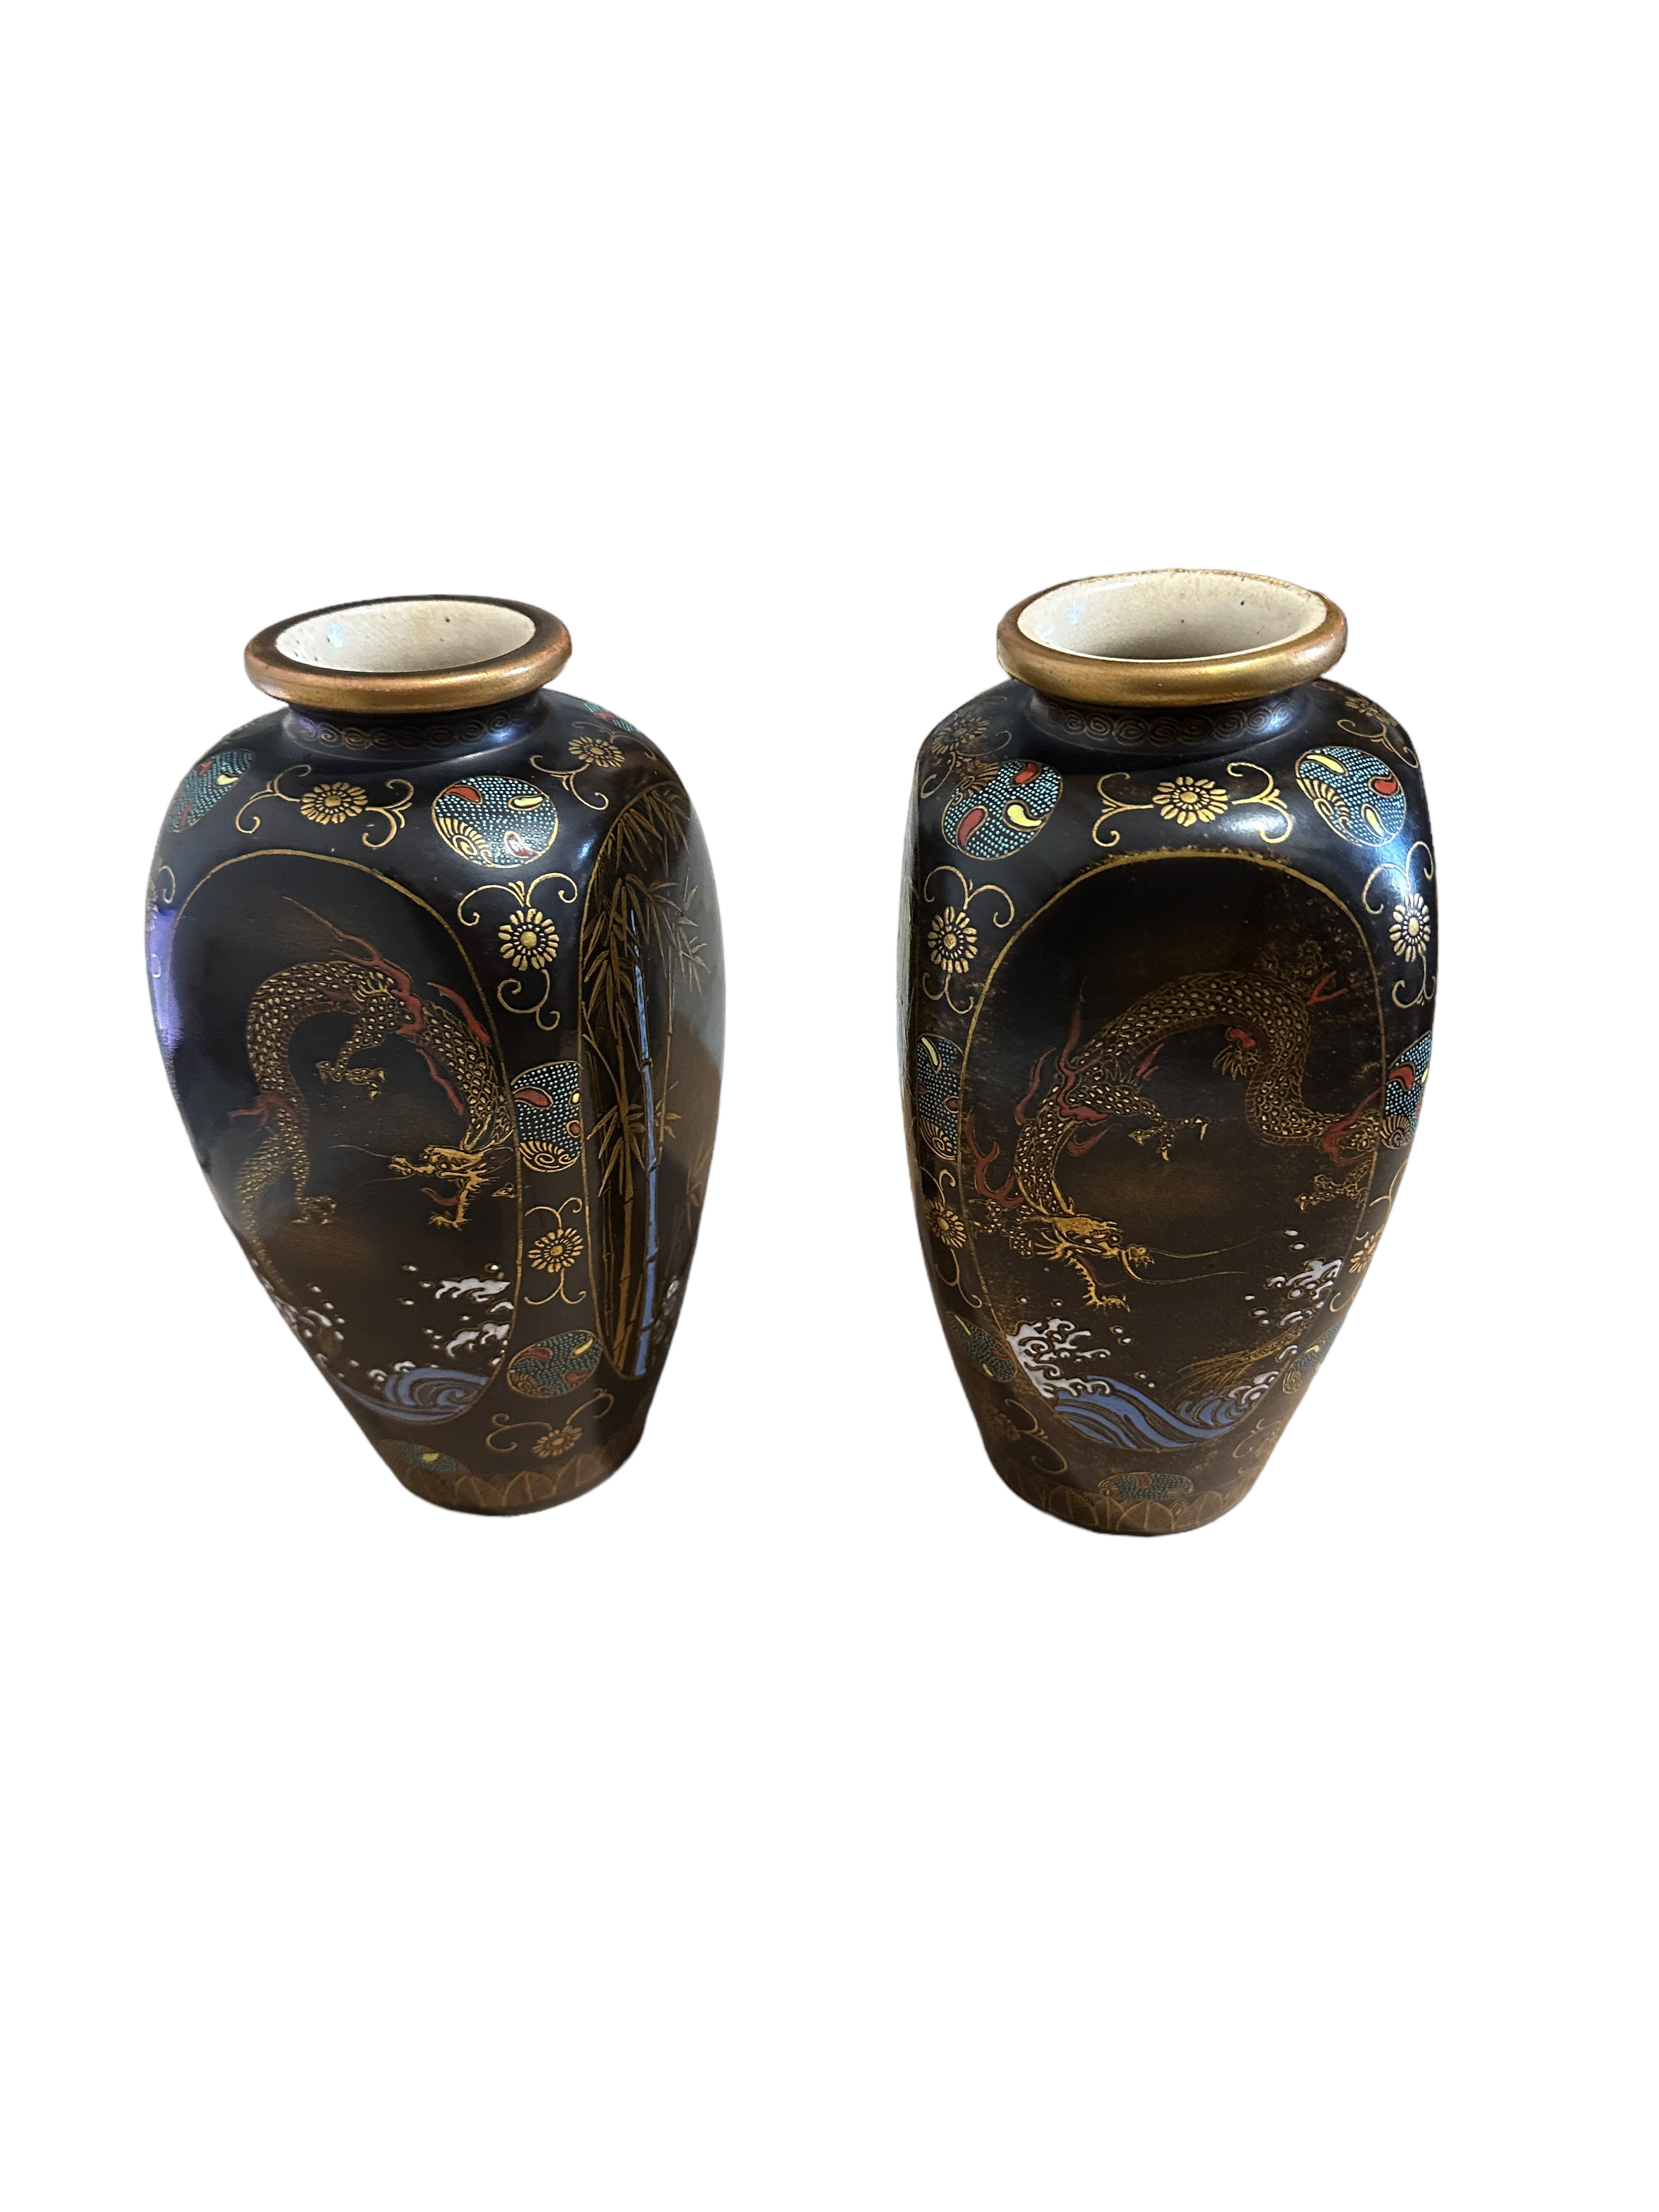 Pair of Antique Satsuma Vases - 22cm tall.